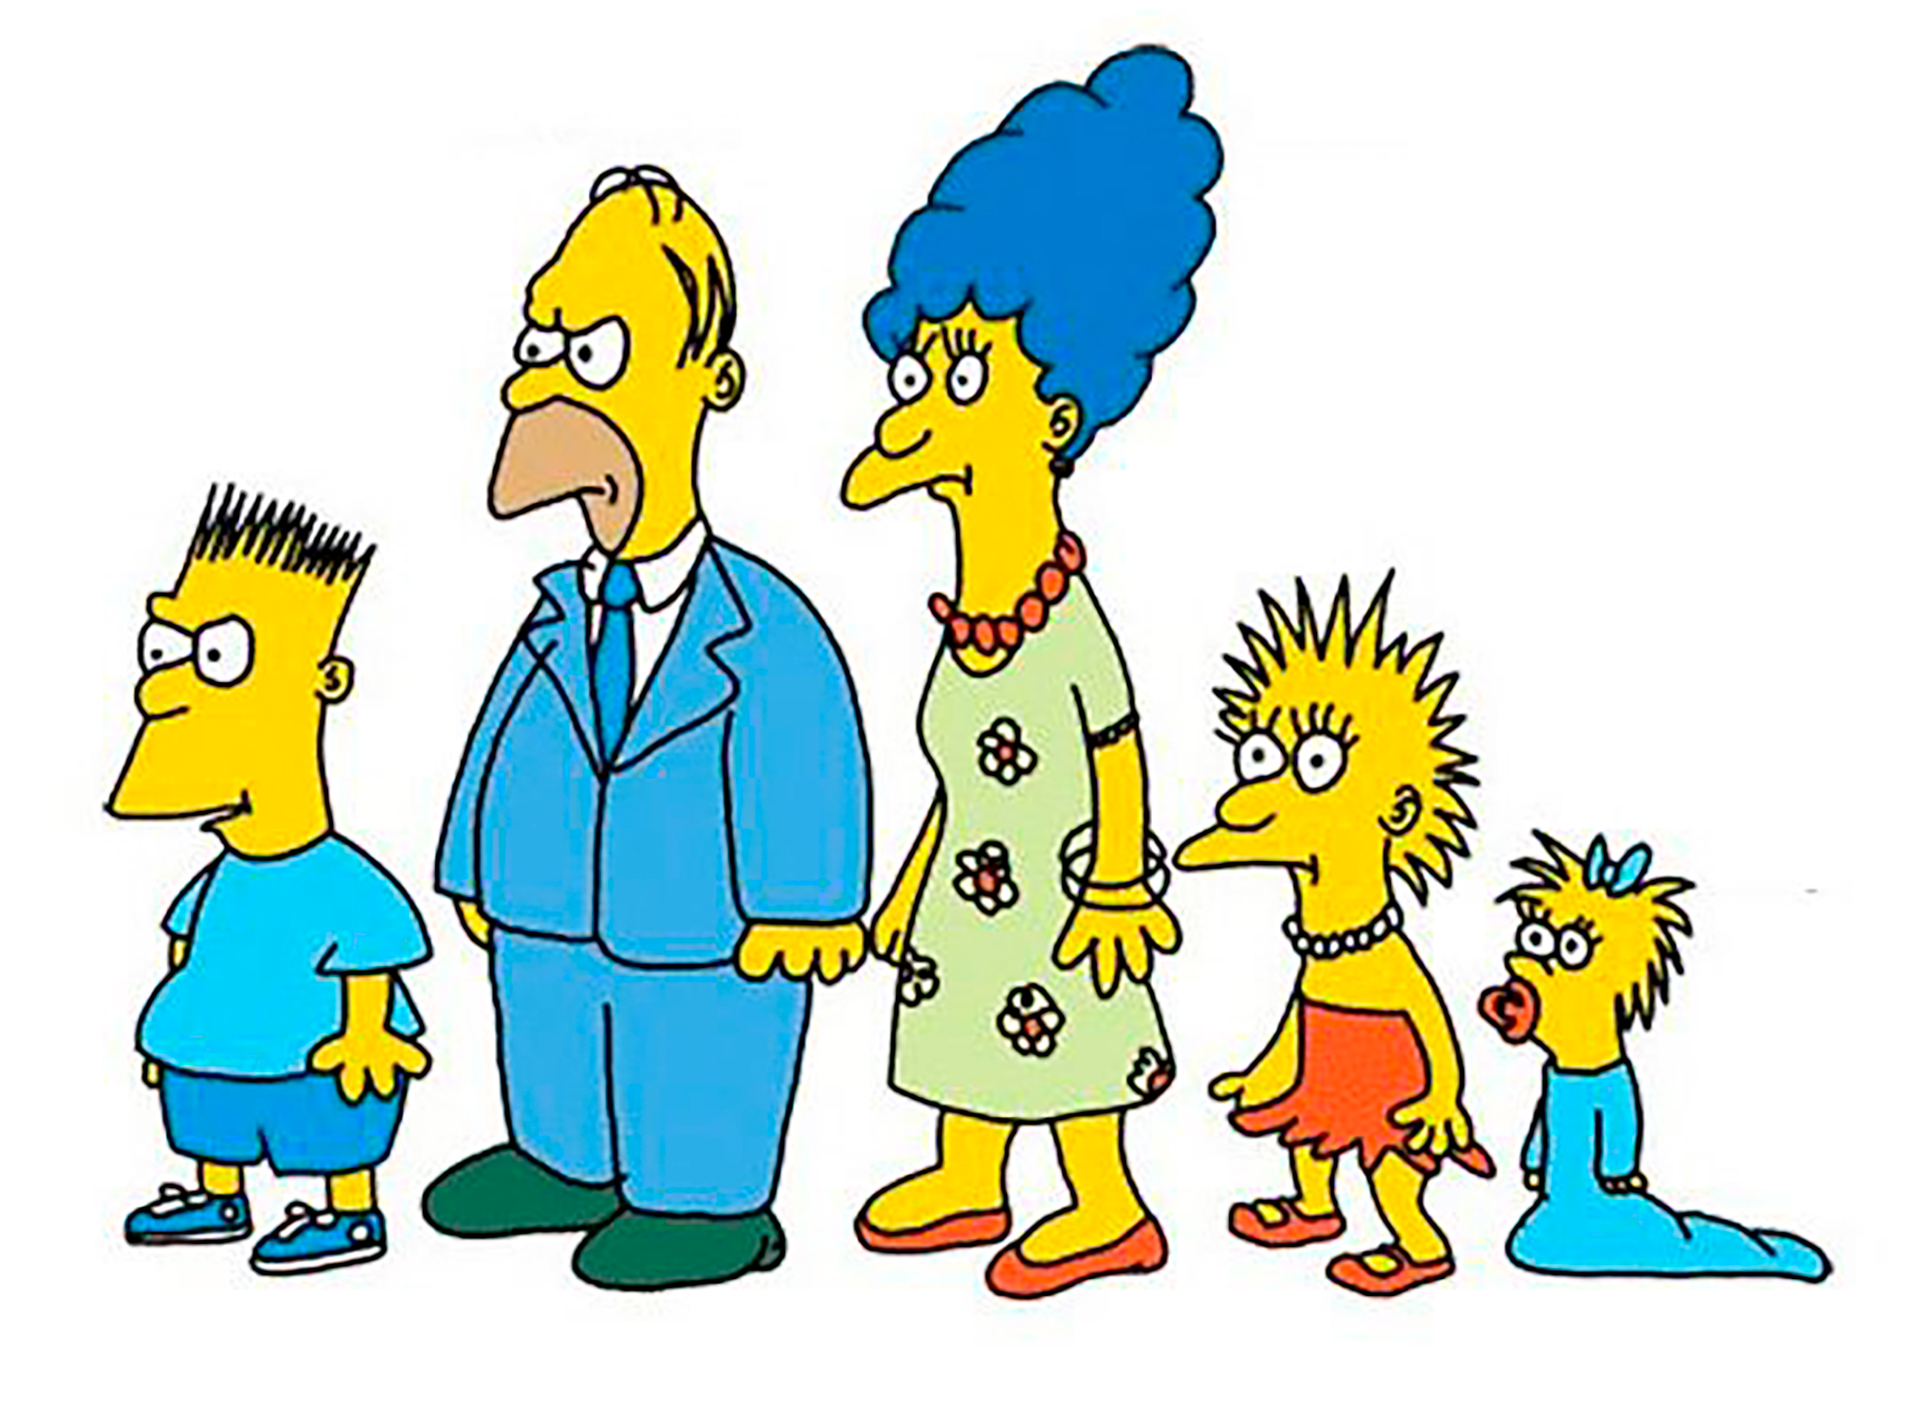 Los Simpson que aparecían en su primer versión eran muy diferentes. Eran caros (unos 15.000 dólares, mucho por aquella época para solo 2 minutos de aire) por lo tanto los ejecutivos quisieron descartarlos del show, pero el productor James L Brooks decidió apostar por ellos